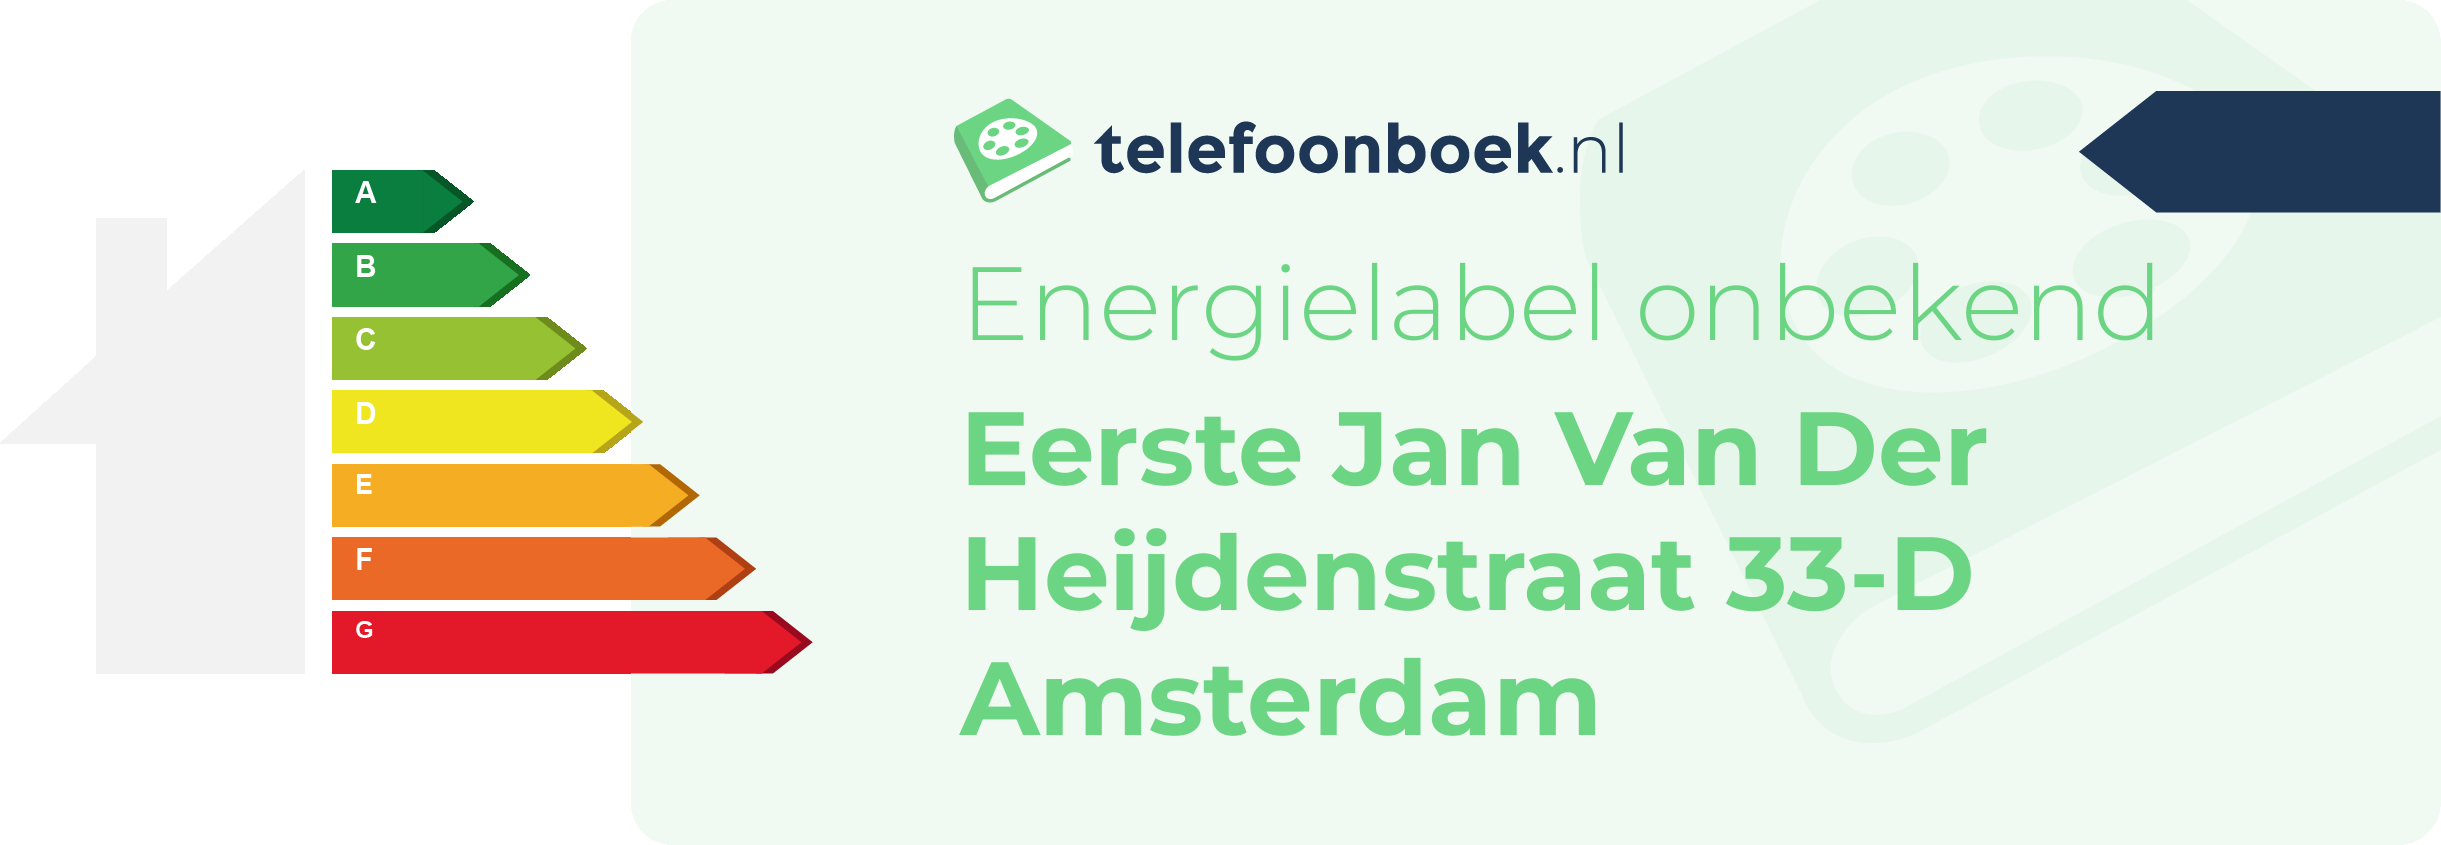 Energielabel Eerste Jan Van Der Heijdenstraat 33-D Amsterdam